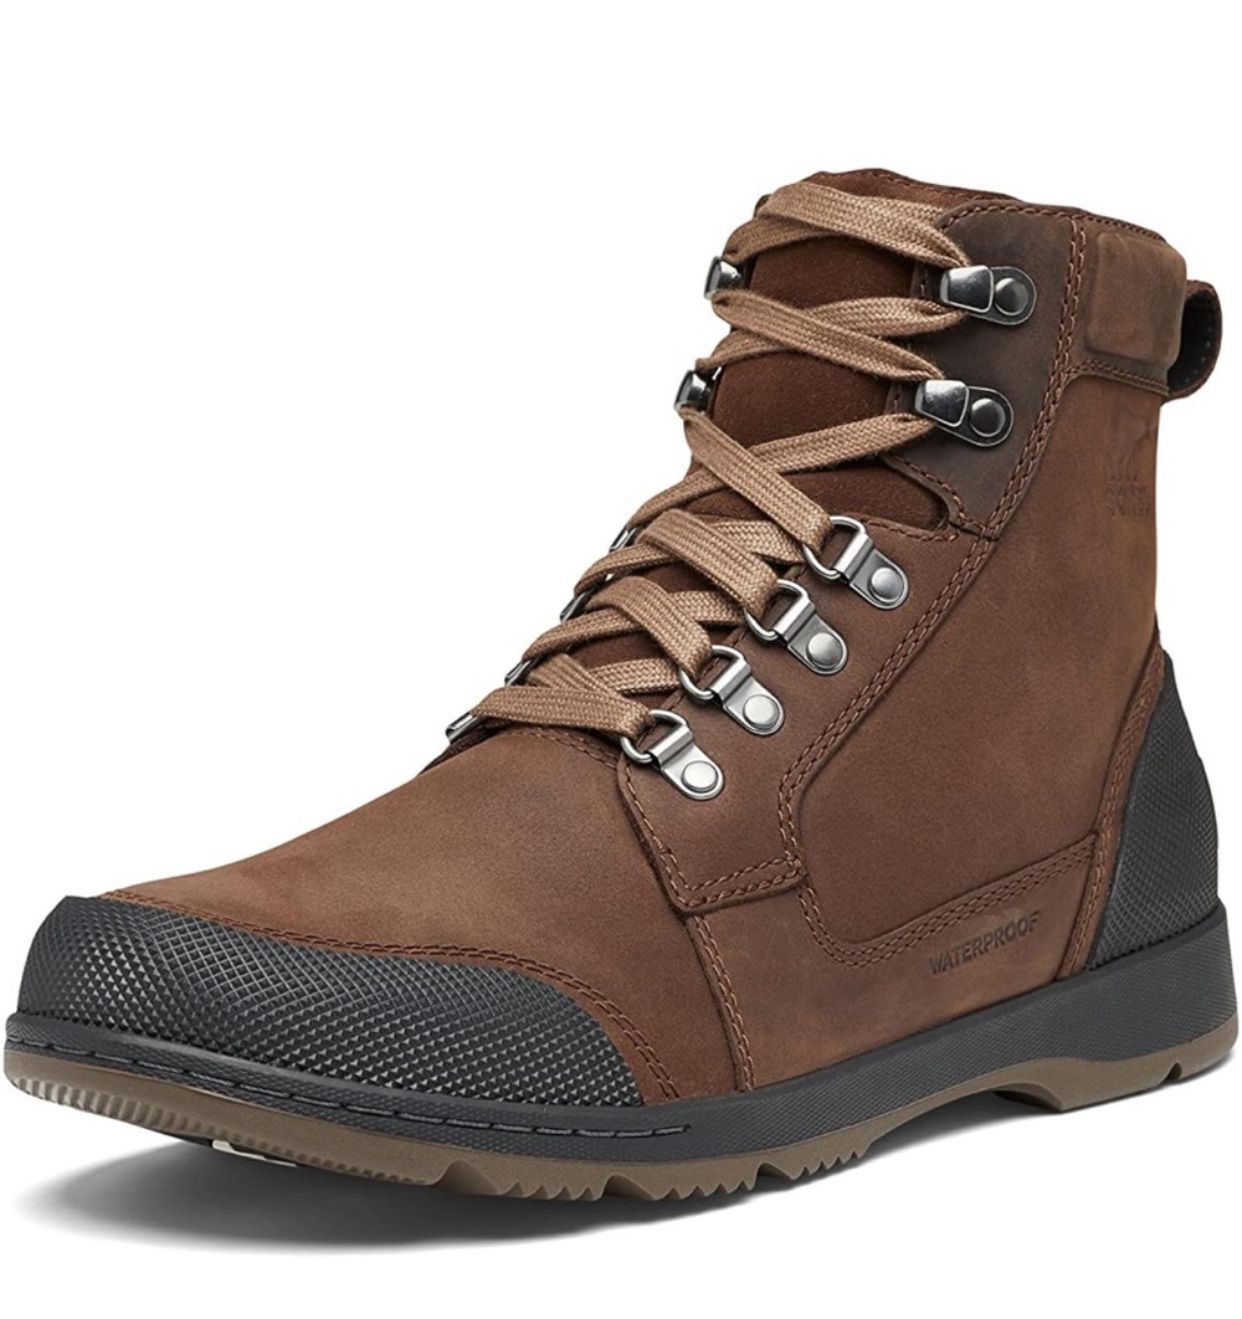 Sorel Men’s Winter Boots Waterproof Rain Hike Size 9.5